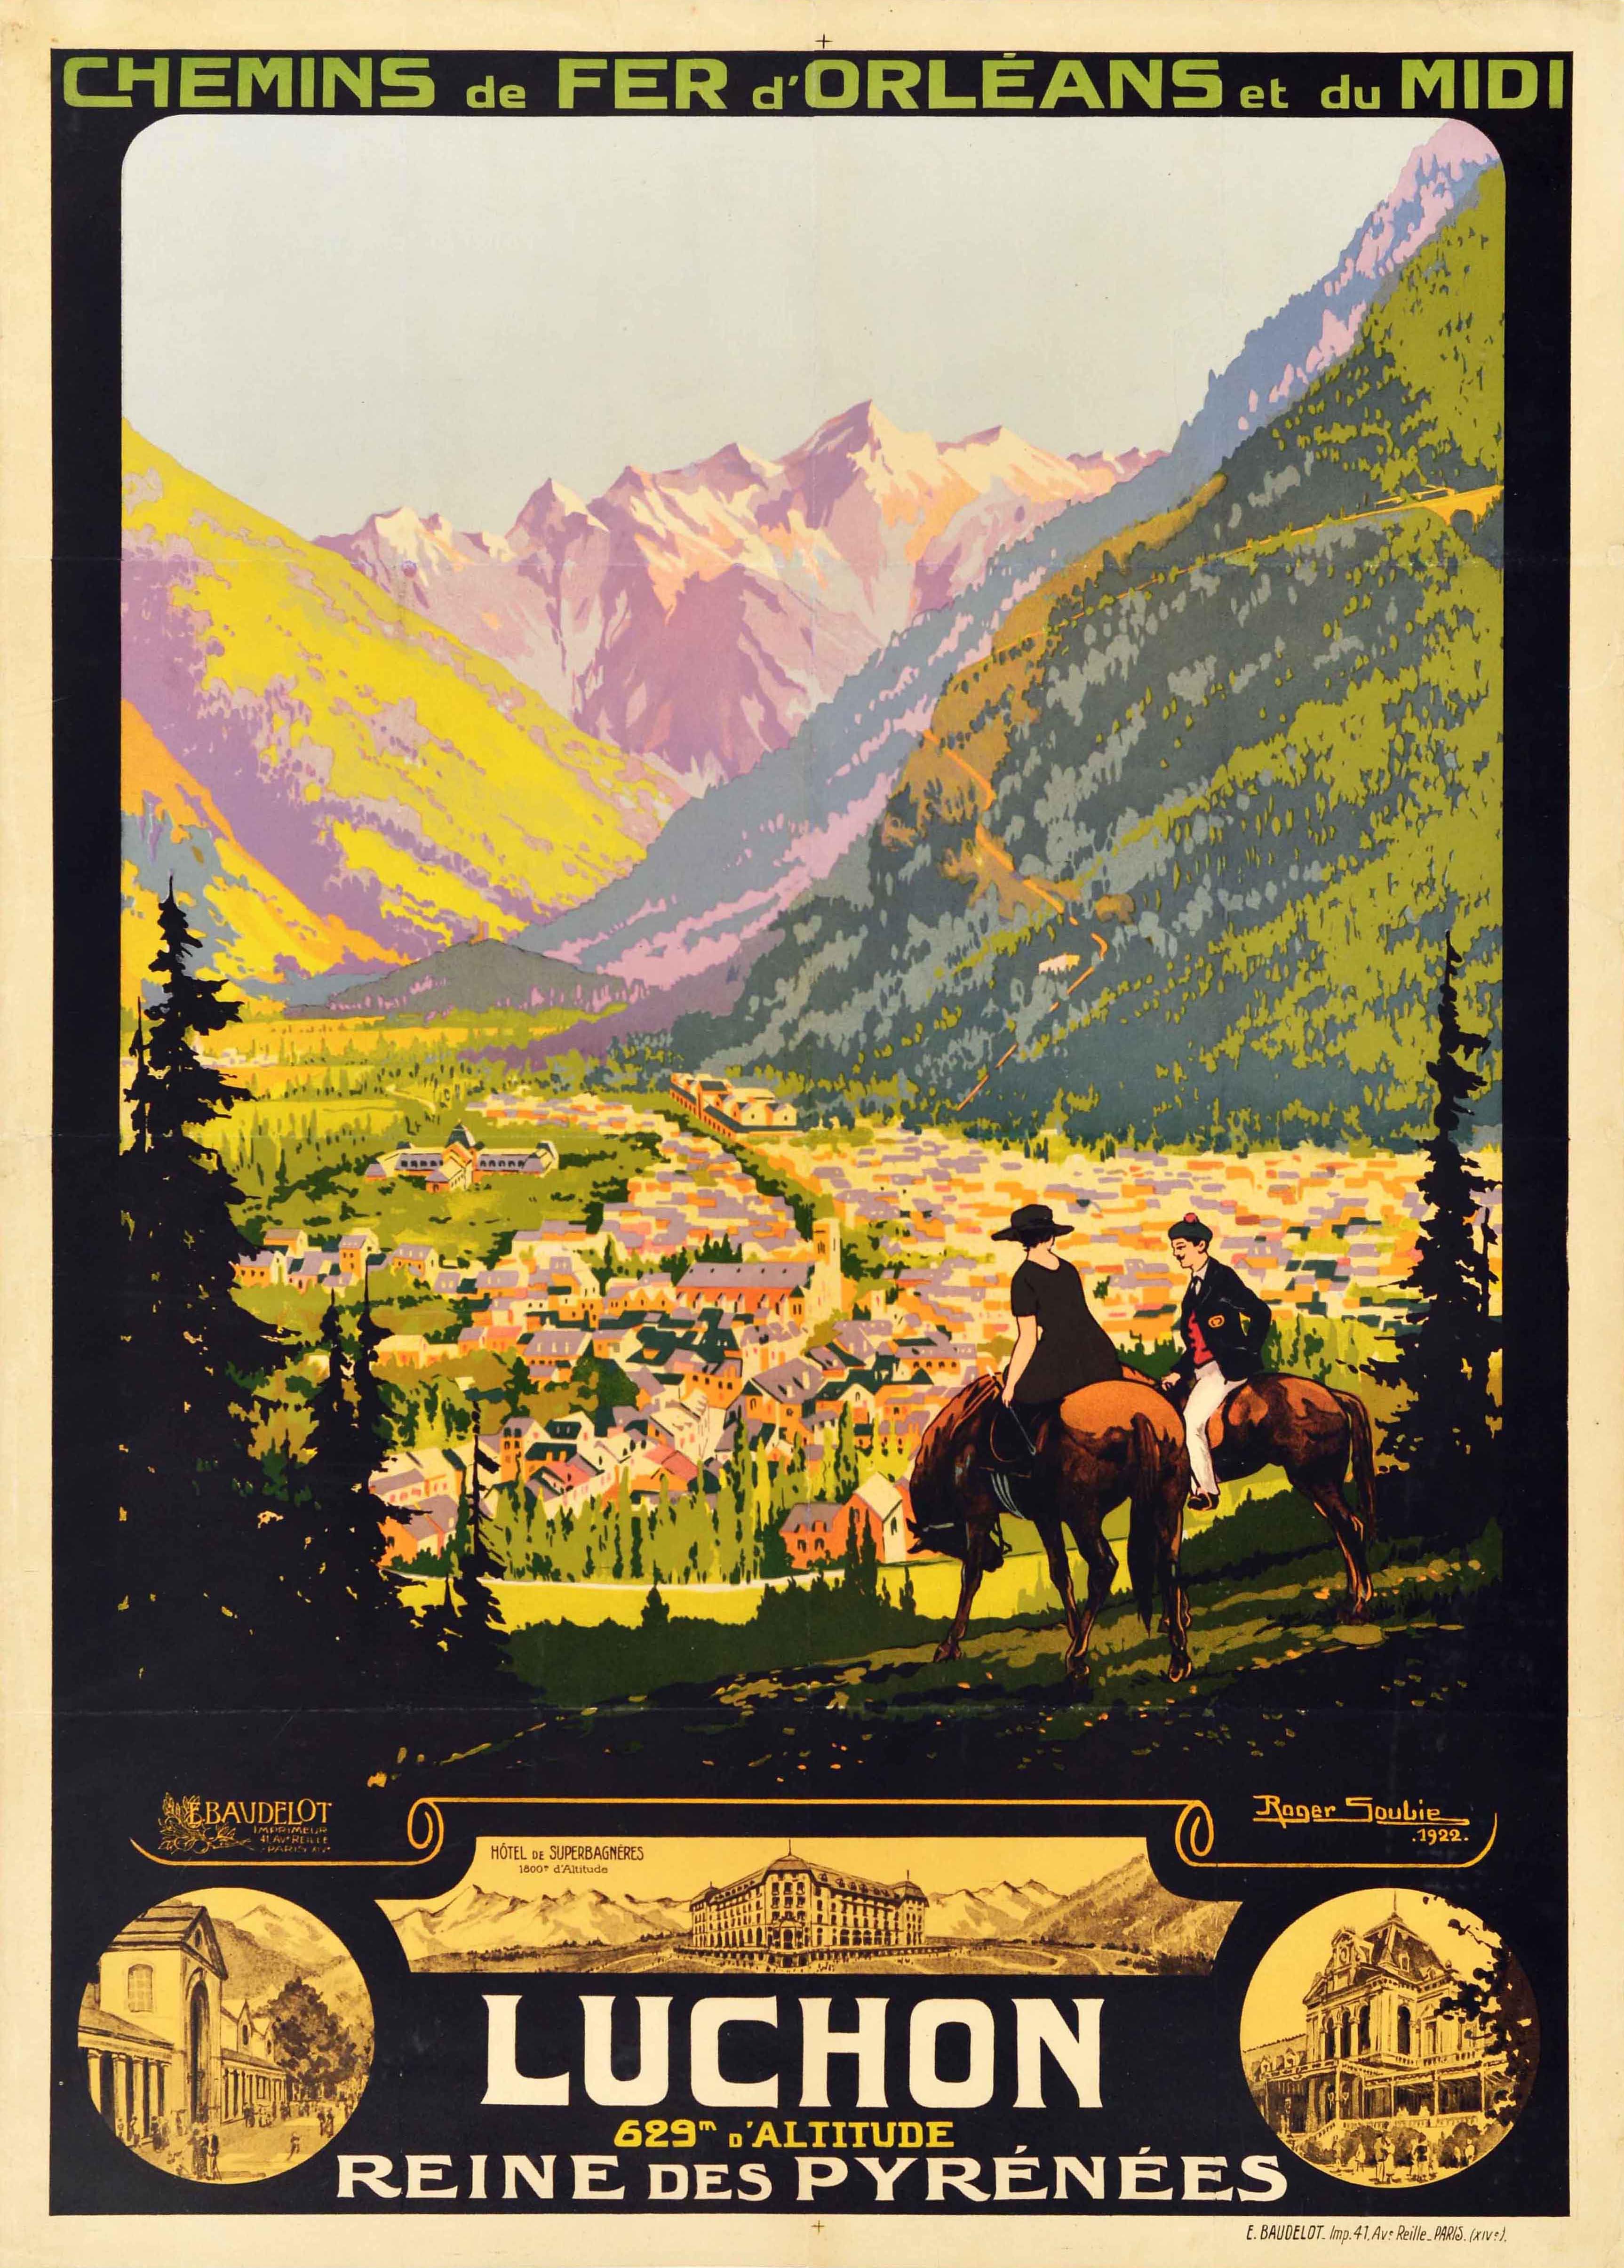 Roger Soubie Print - Original Antique Travel Poster Luchon Pyrenees Orleans Midi Railways Soubie Art